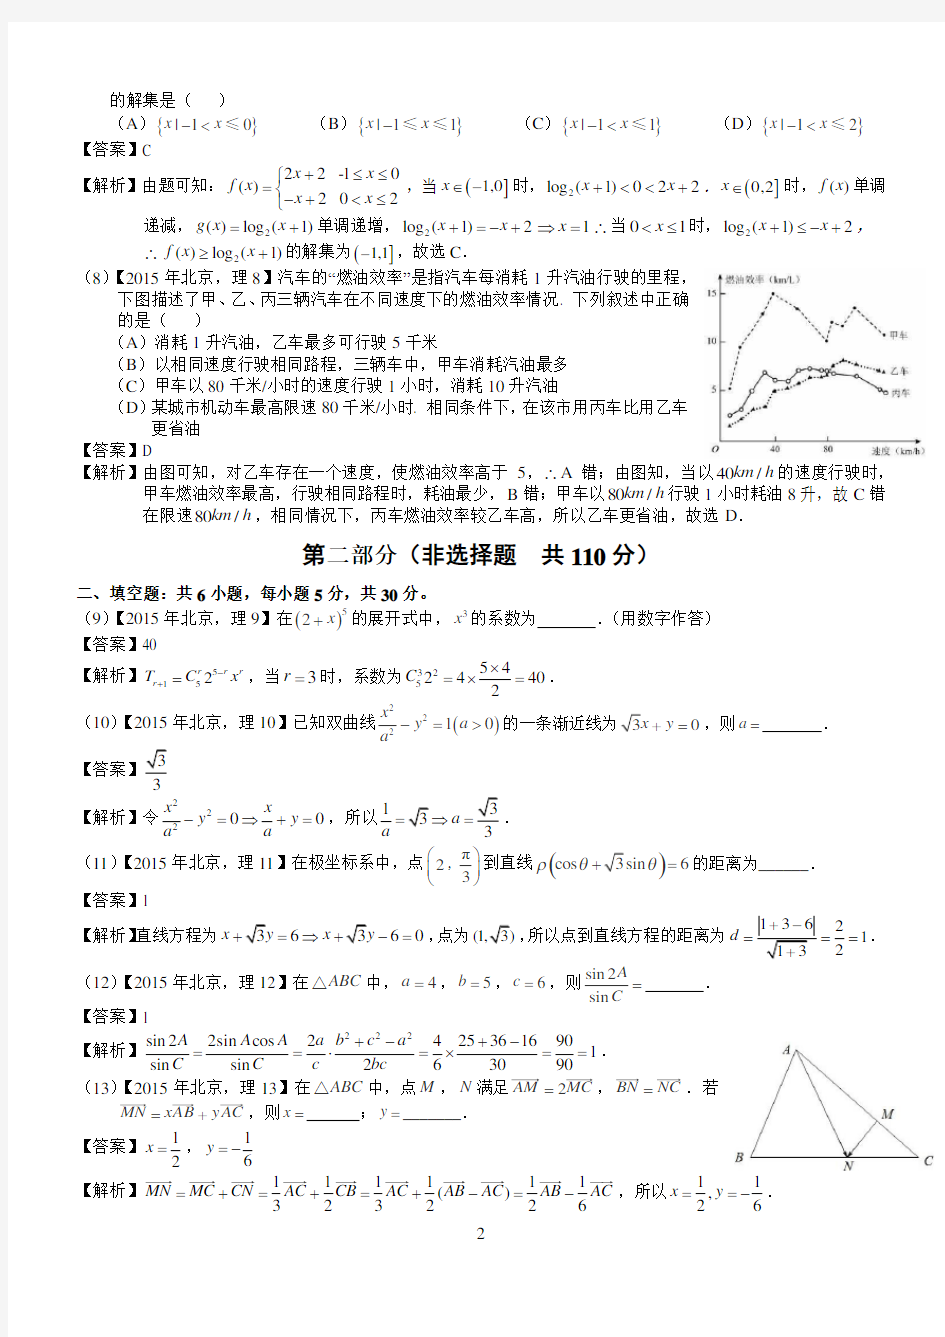 2015年高考北京理科数学试题及答案解析